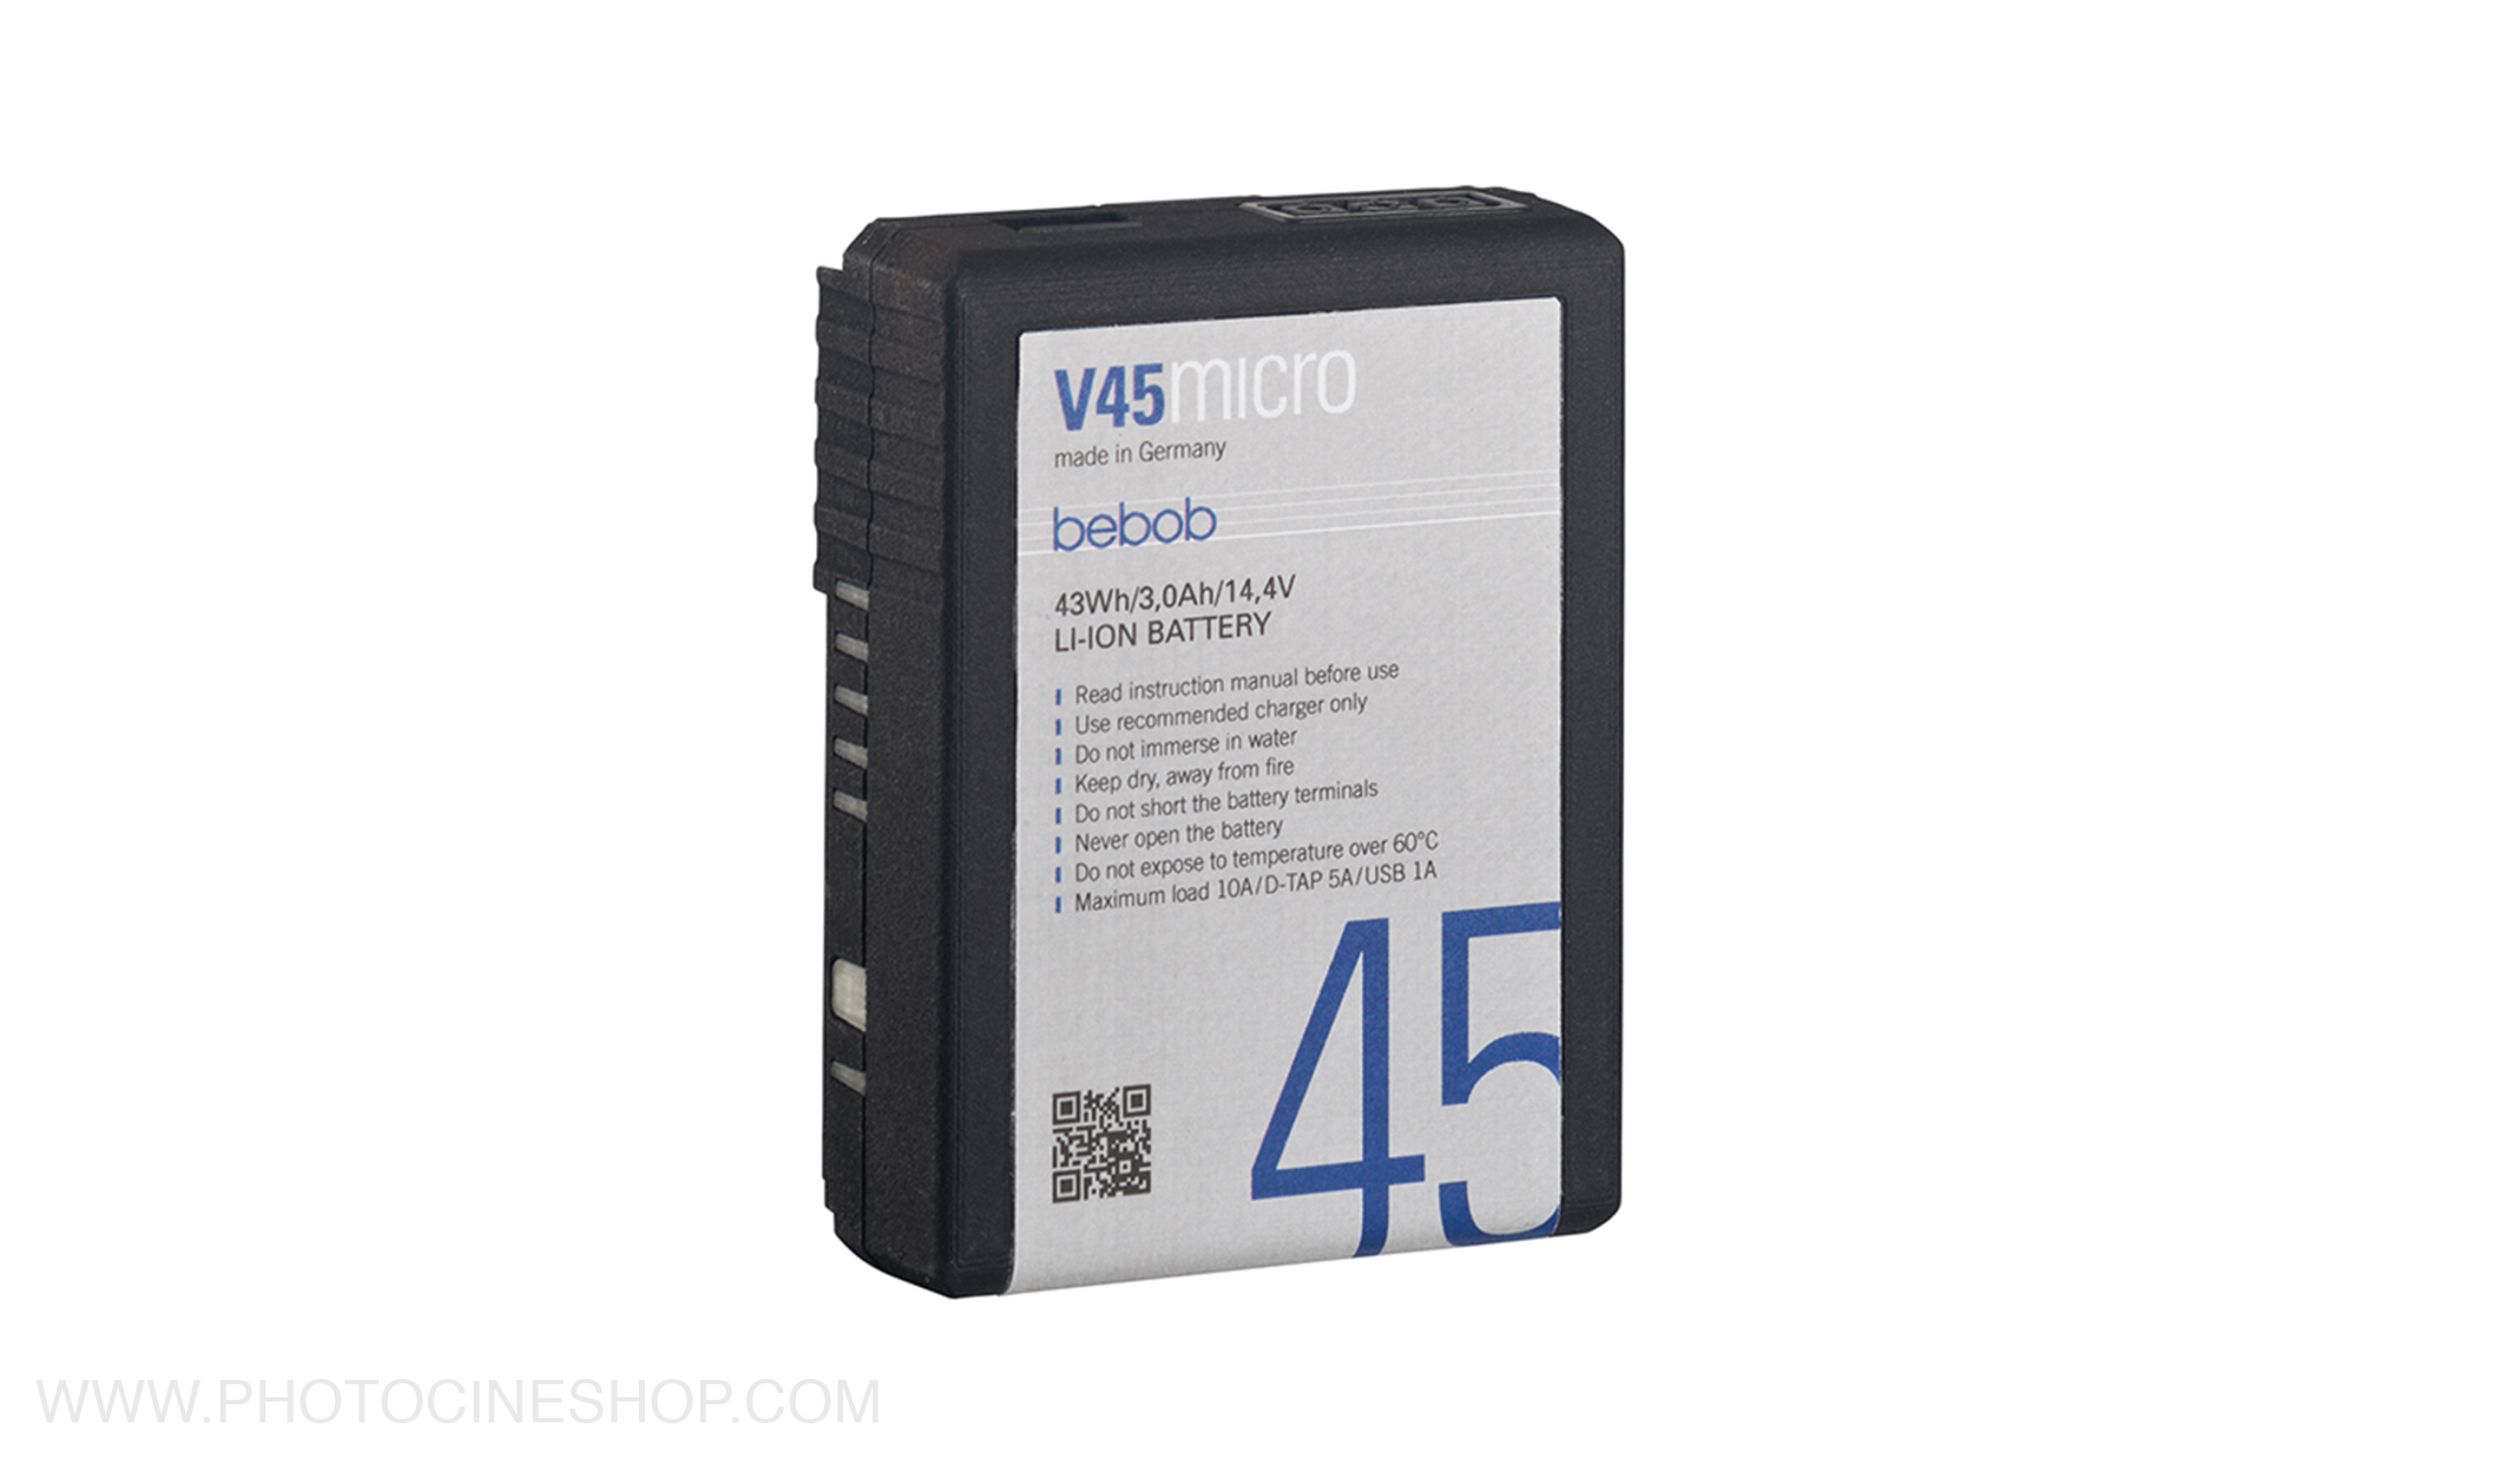 BEBOB - V45 Micro - V-Mount Li-Ion Battery 14.4V / 43Wh